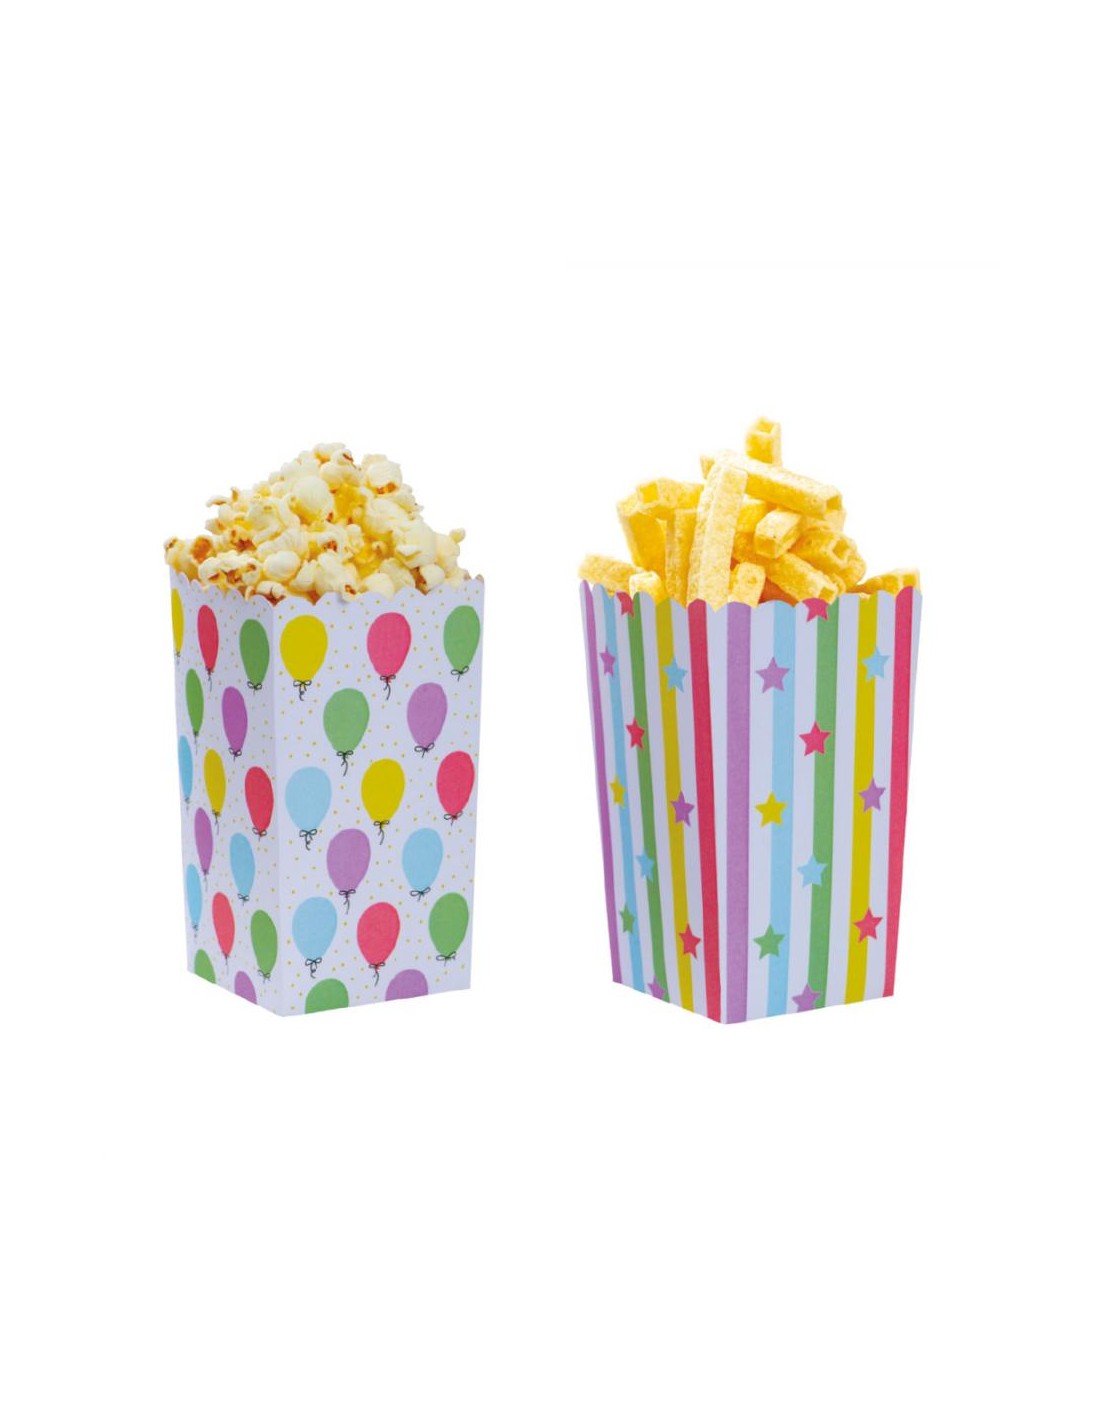 Limmion 14oz Bicchieri di Cartone Scatole di Patatine Fritte Contenitore per Alimenti da Asporto Scatola per Popcorn in Carta Kraft per Feste e Dolci Cialda Torta Sfoglia Gelato Confezione da 50 